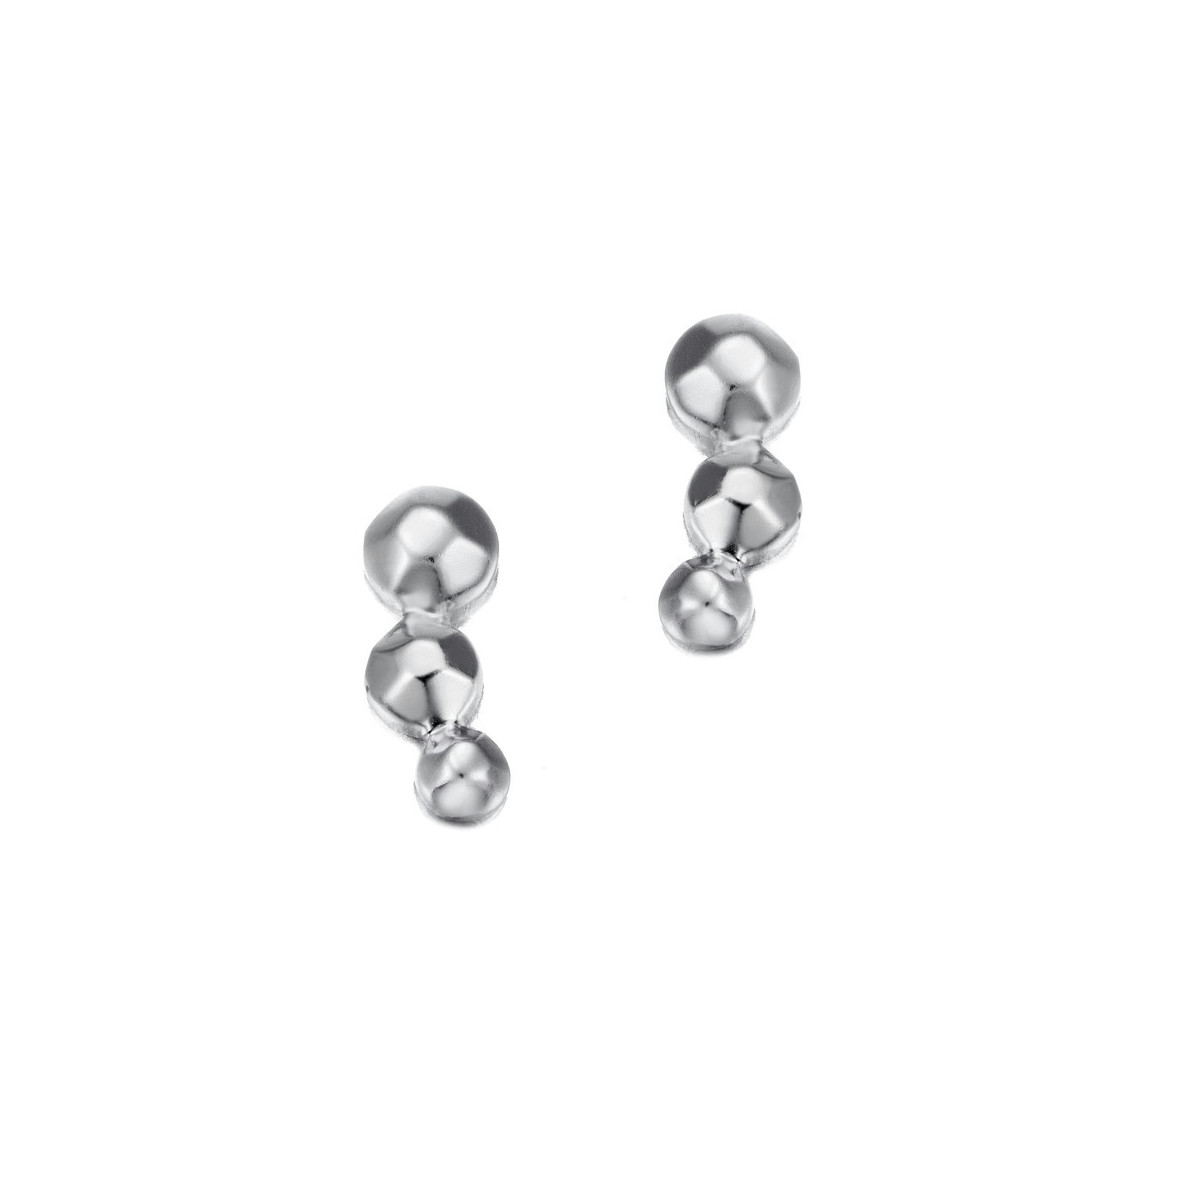 CELESTIAL Earrings in Silver.